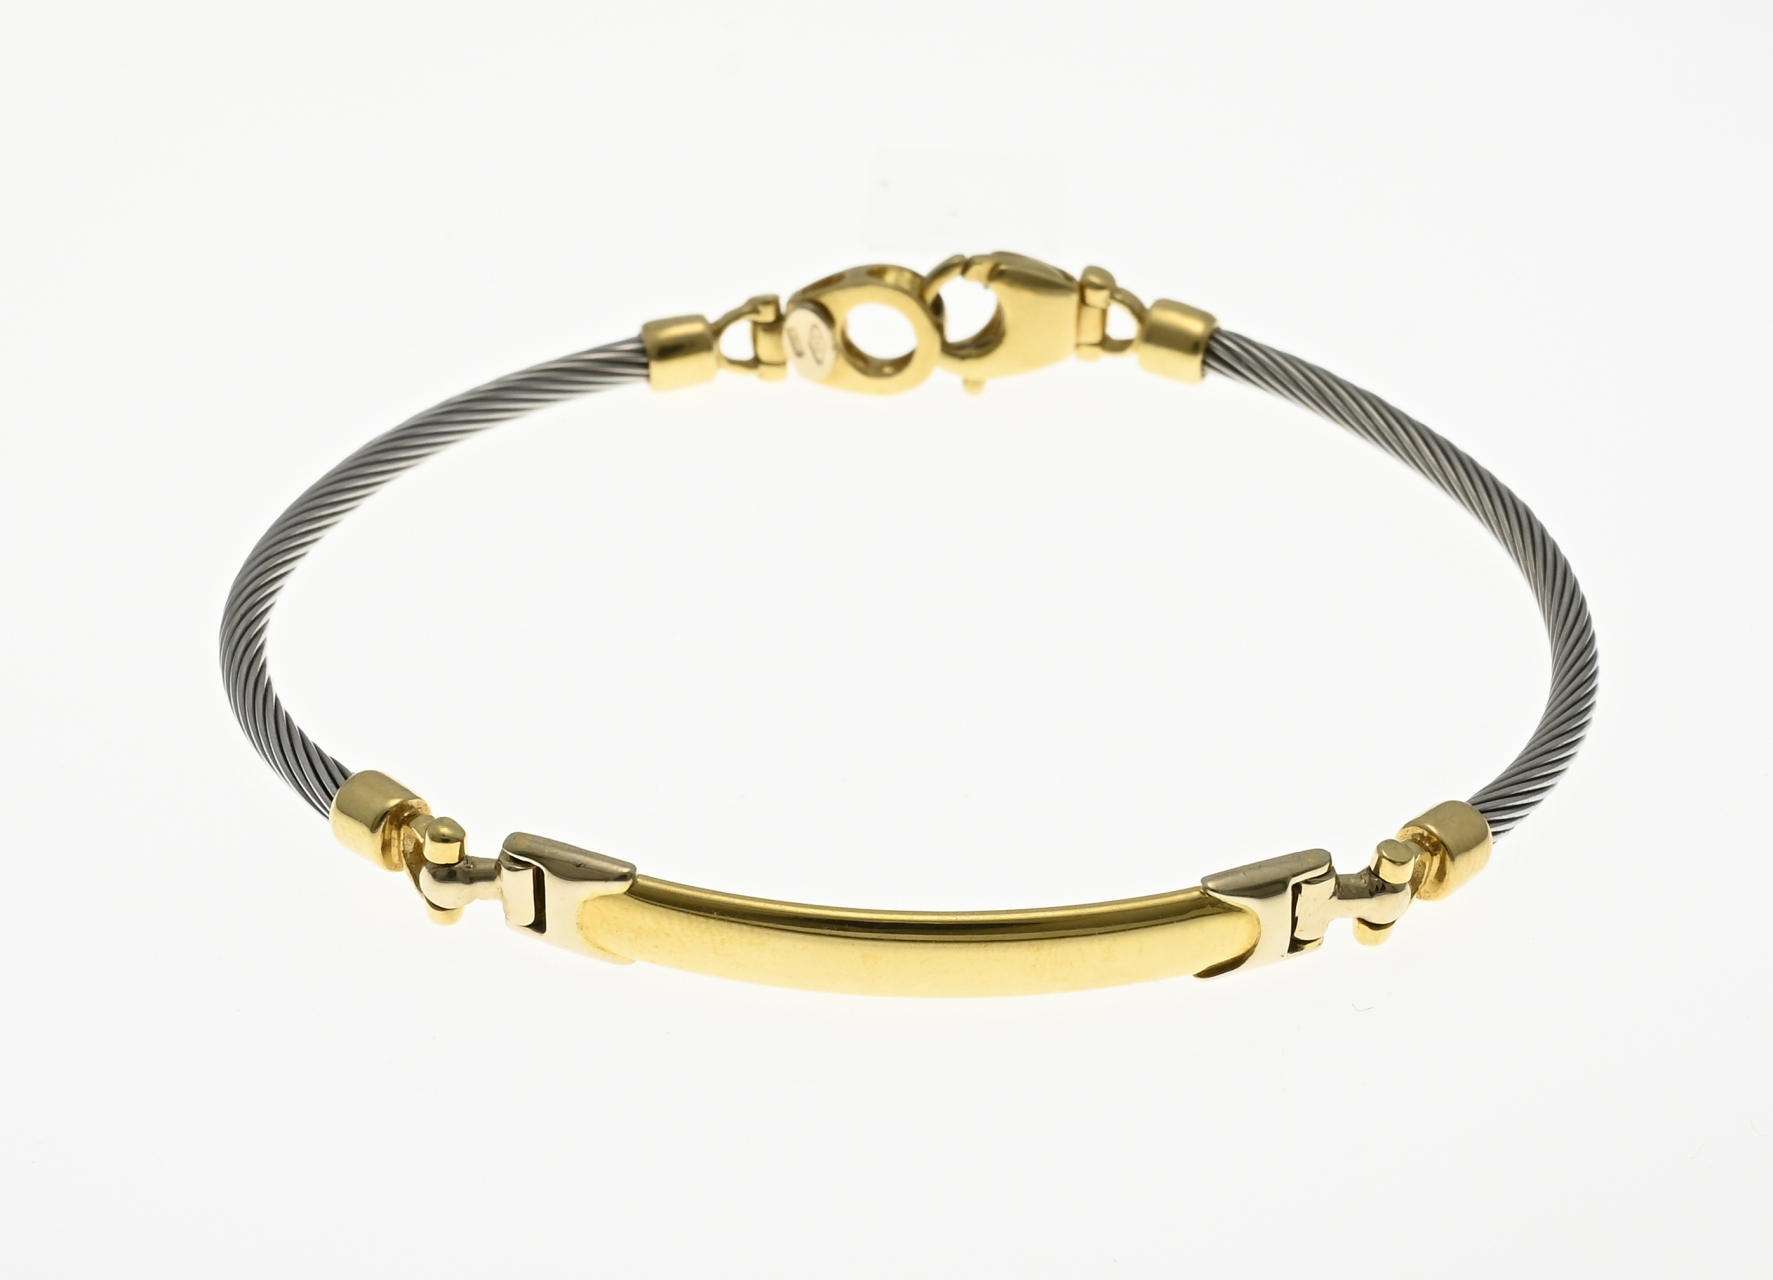 Gold and steel bracelet